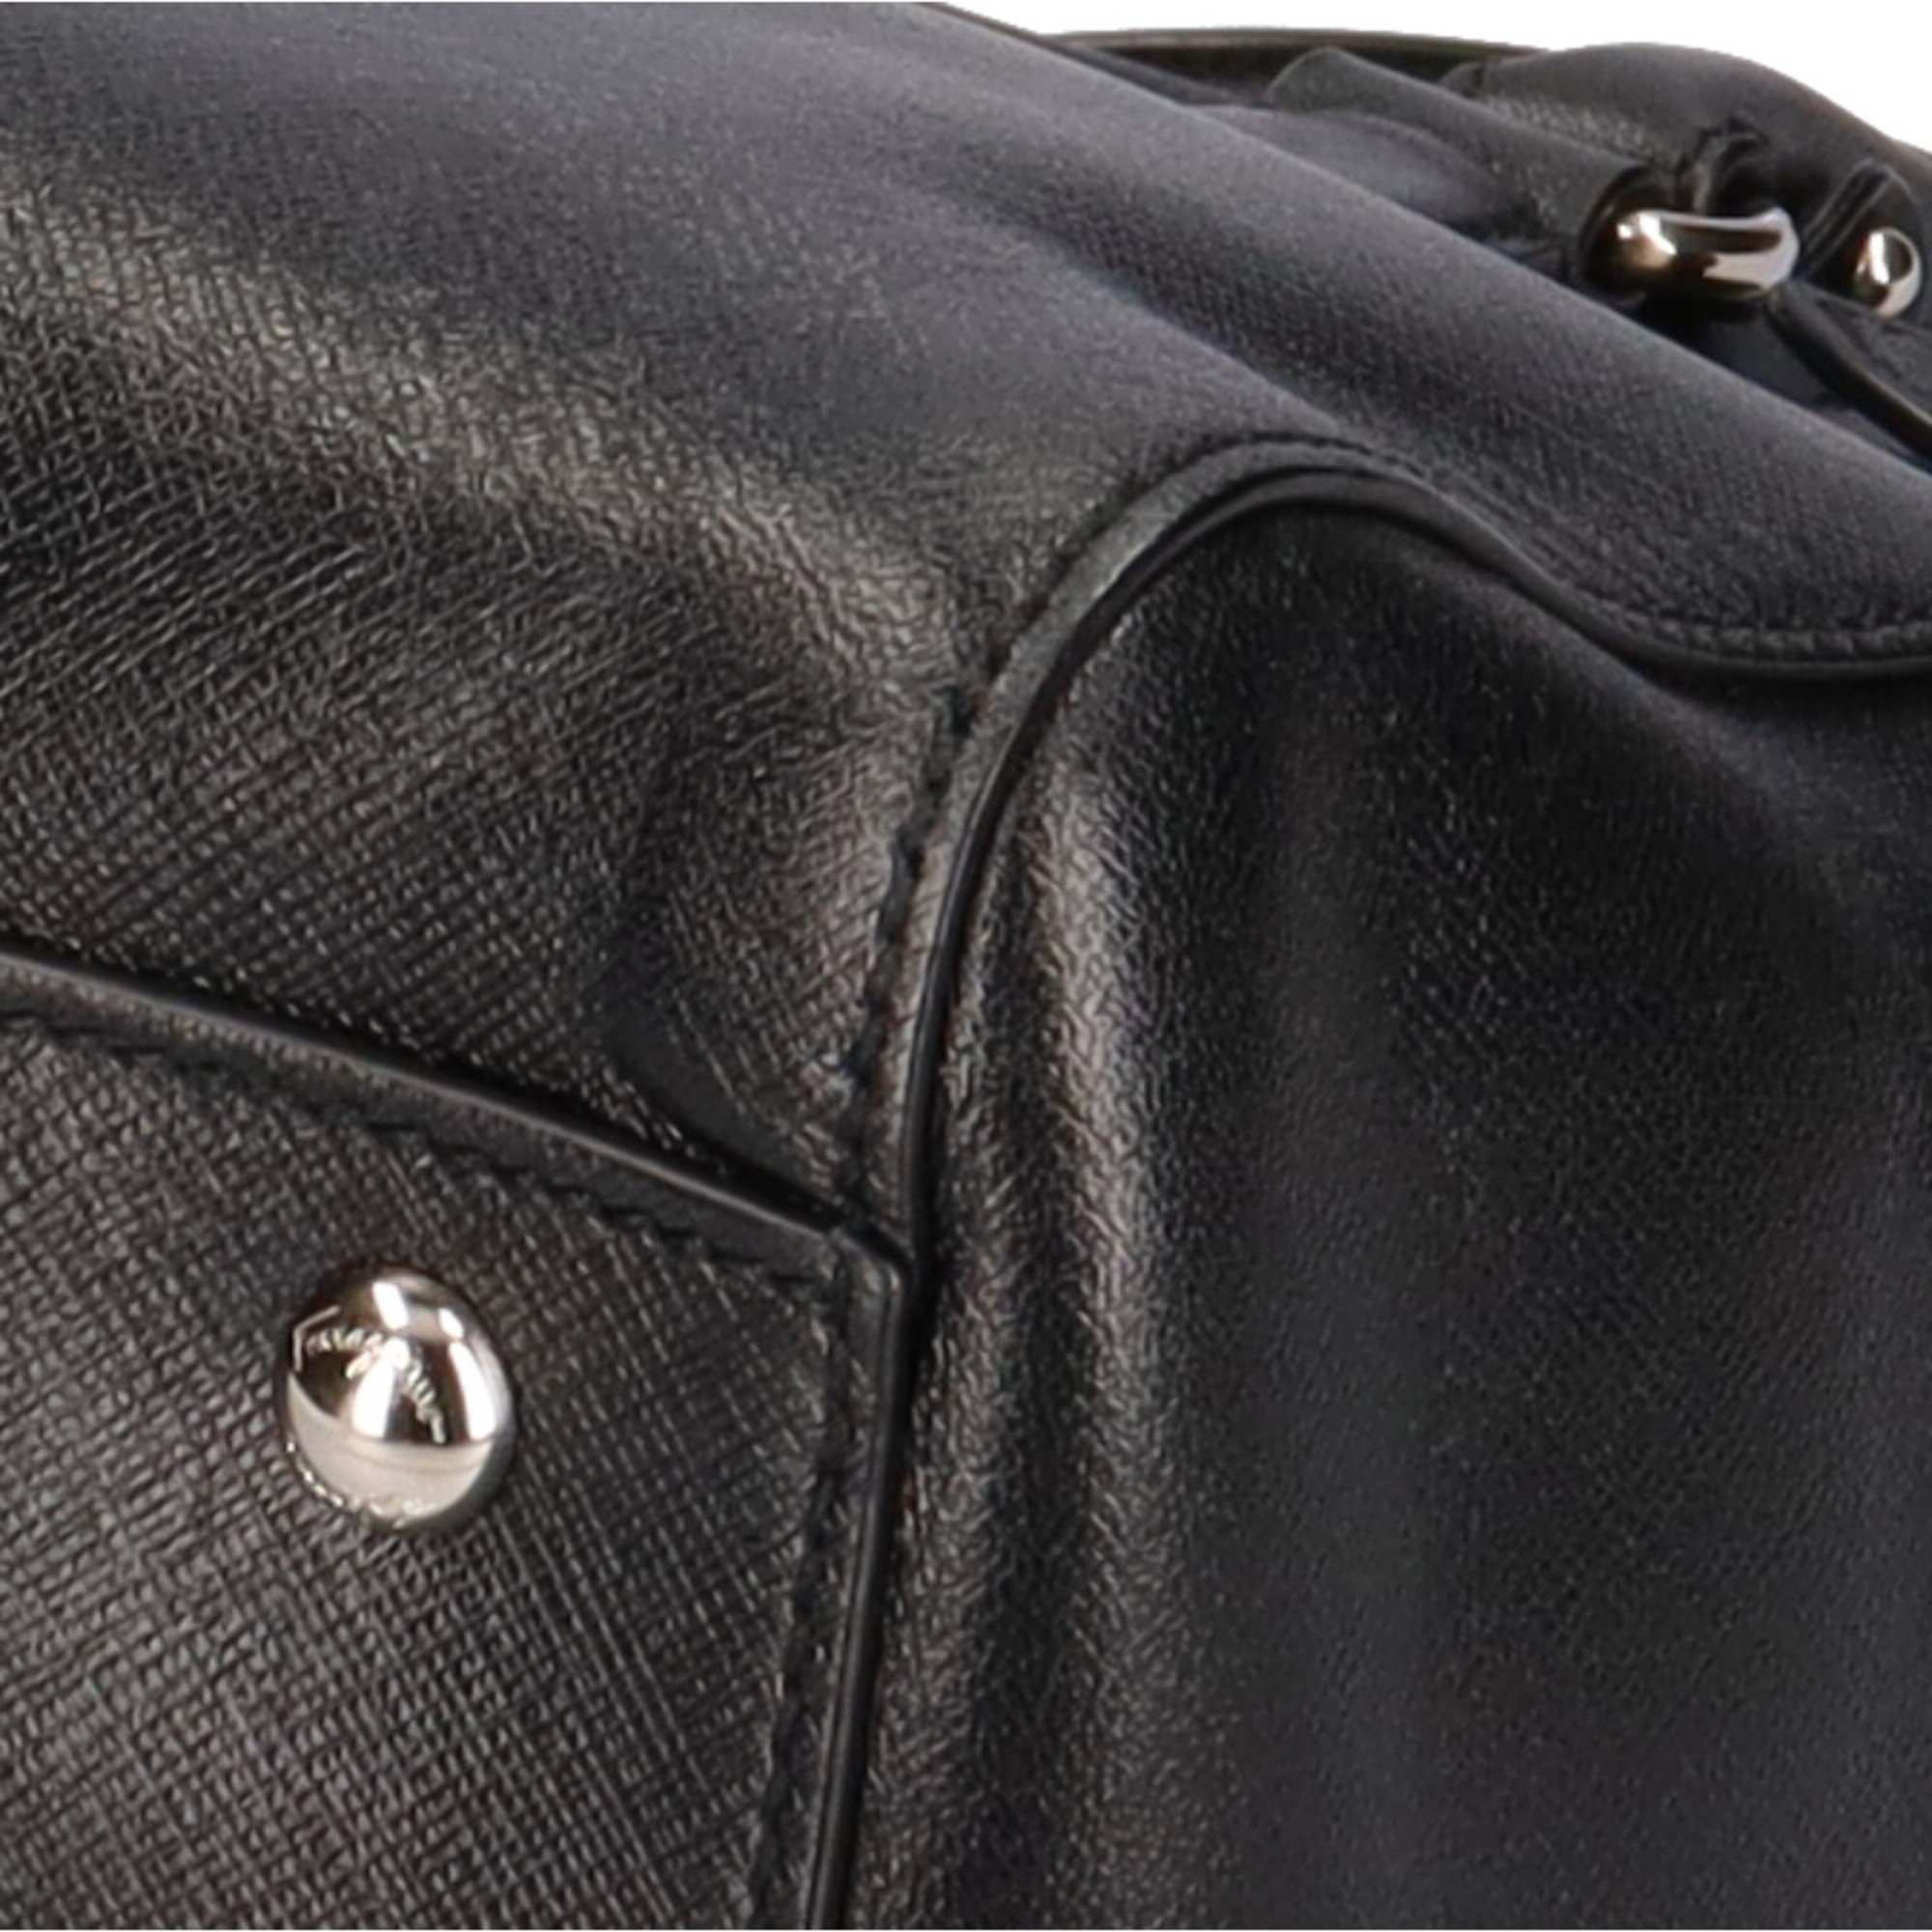 Salvatore Ferragamo Gancini shoulder bag leather black ladies